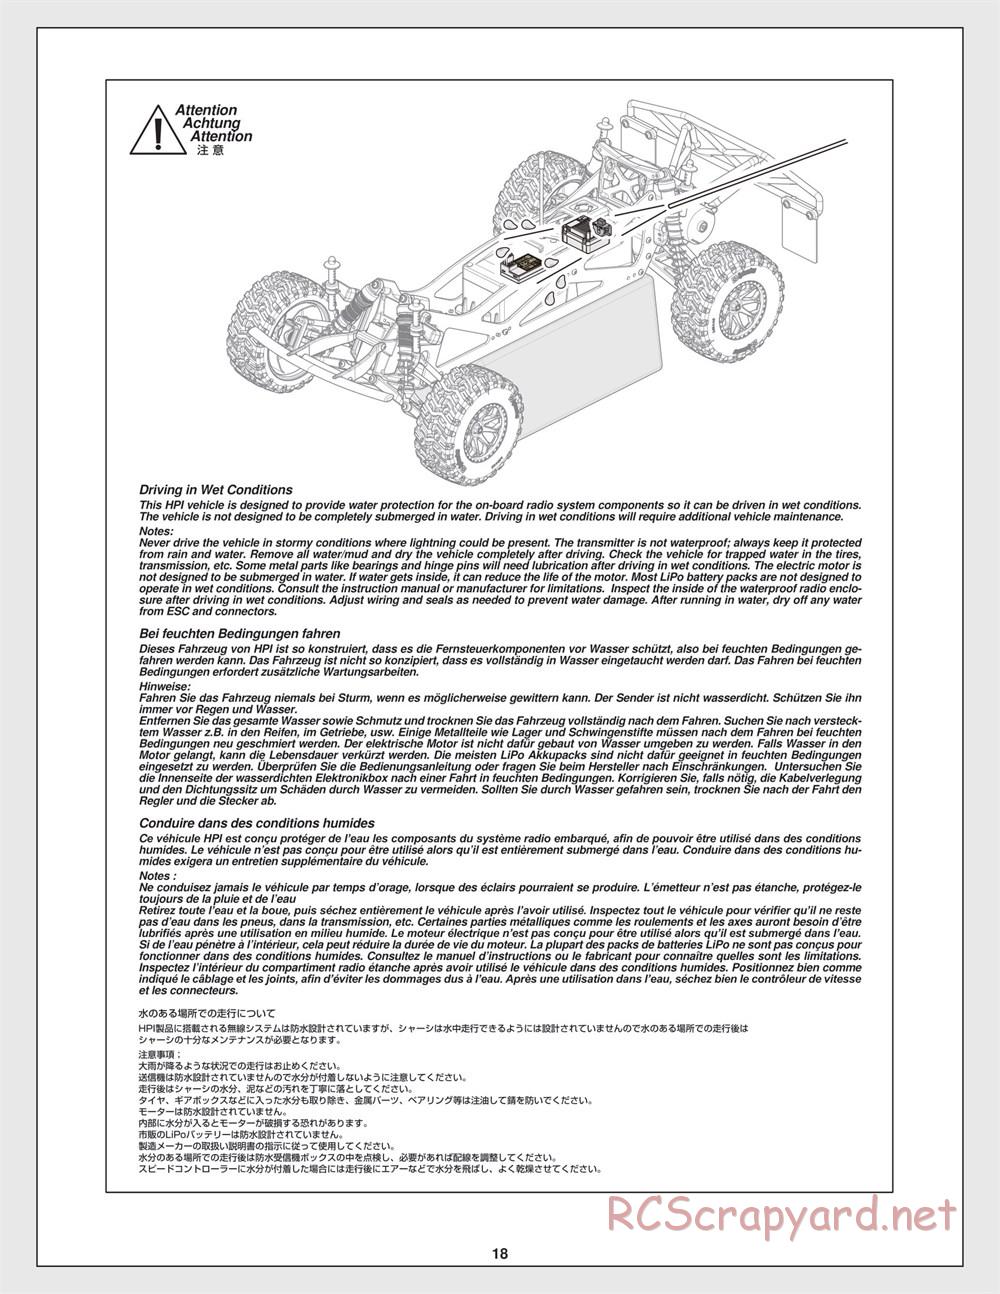 HPI - Jumpshot SC - Manual - Page 18